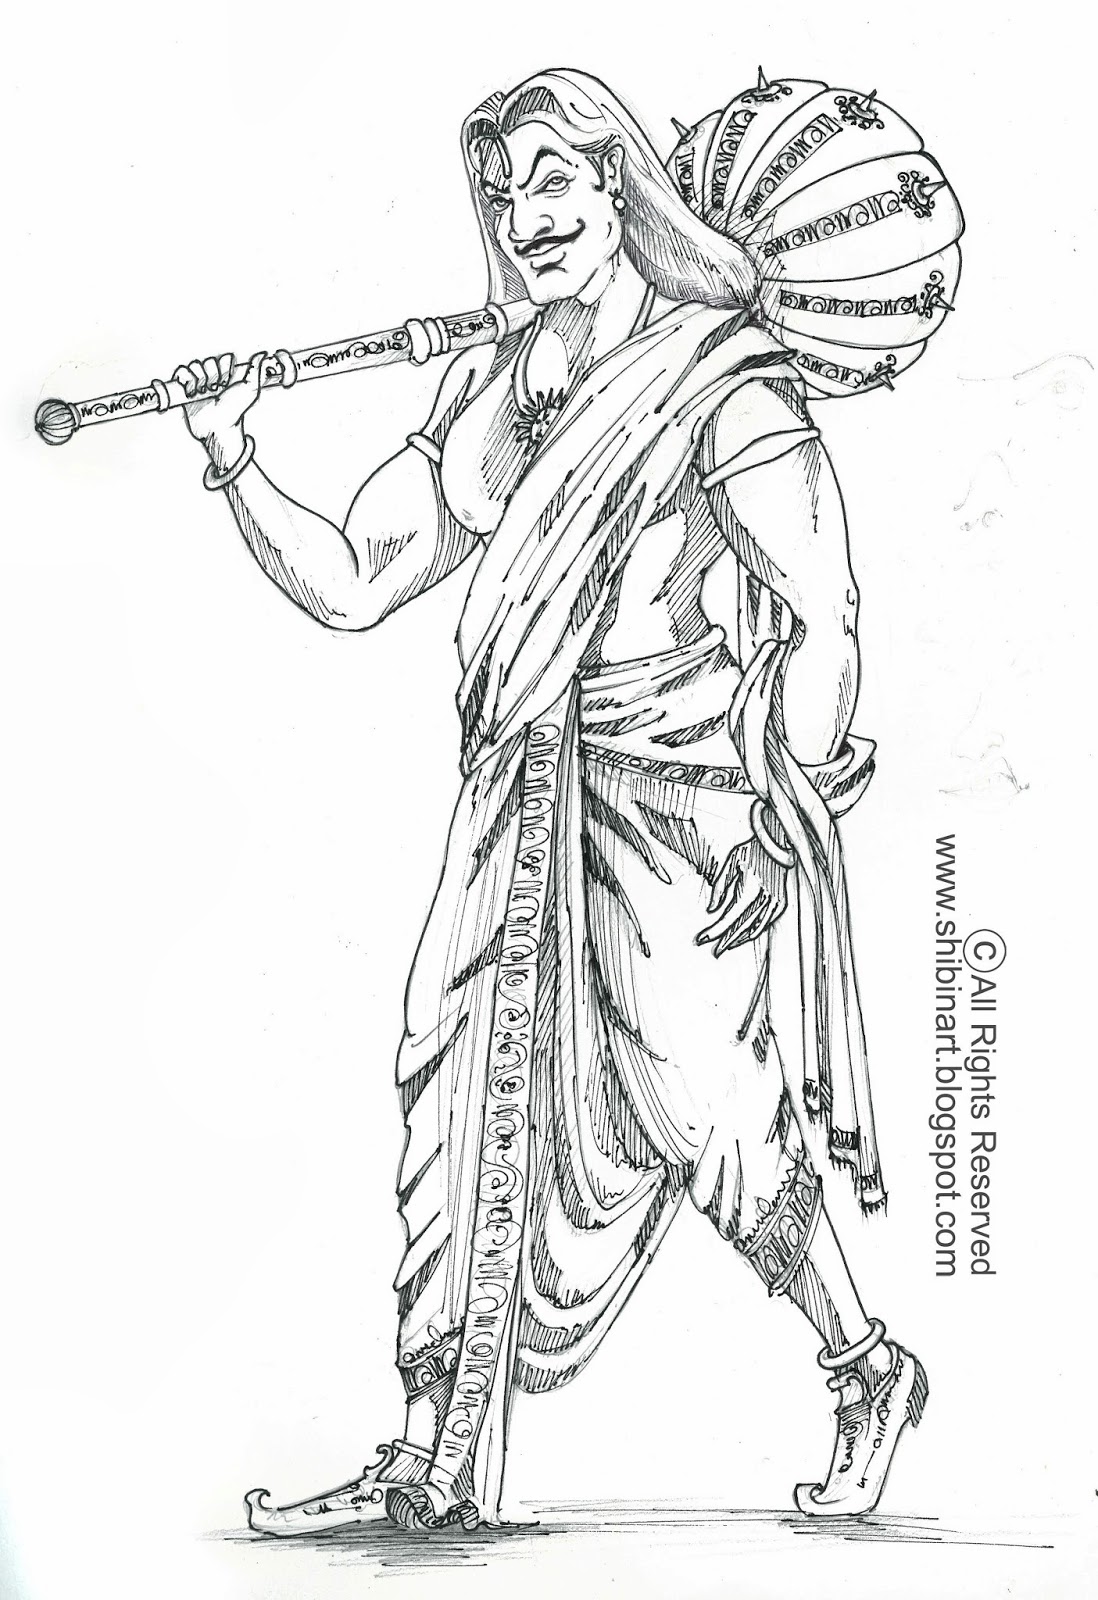 SHIBIN ART: Study of Duryodhana